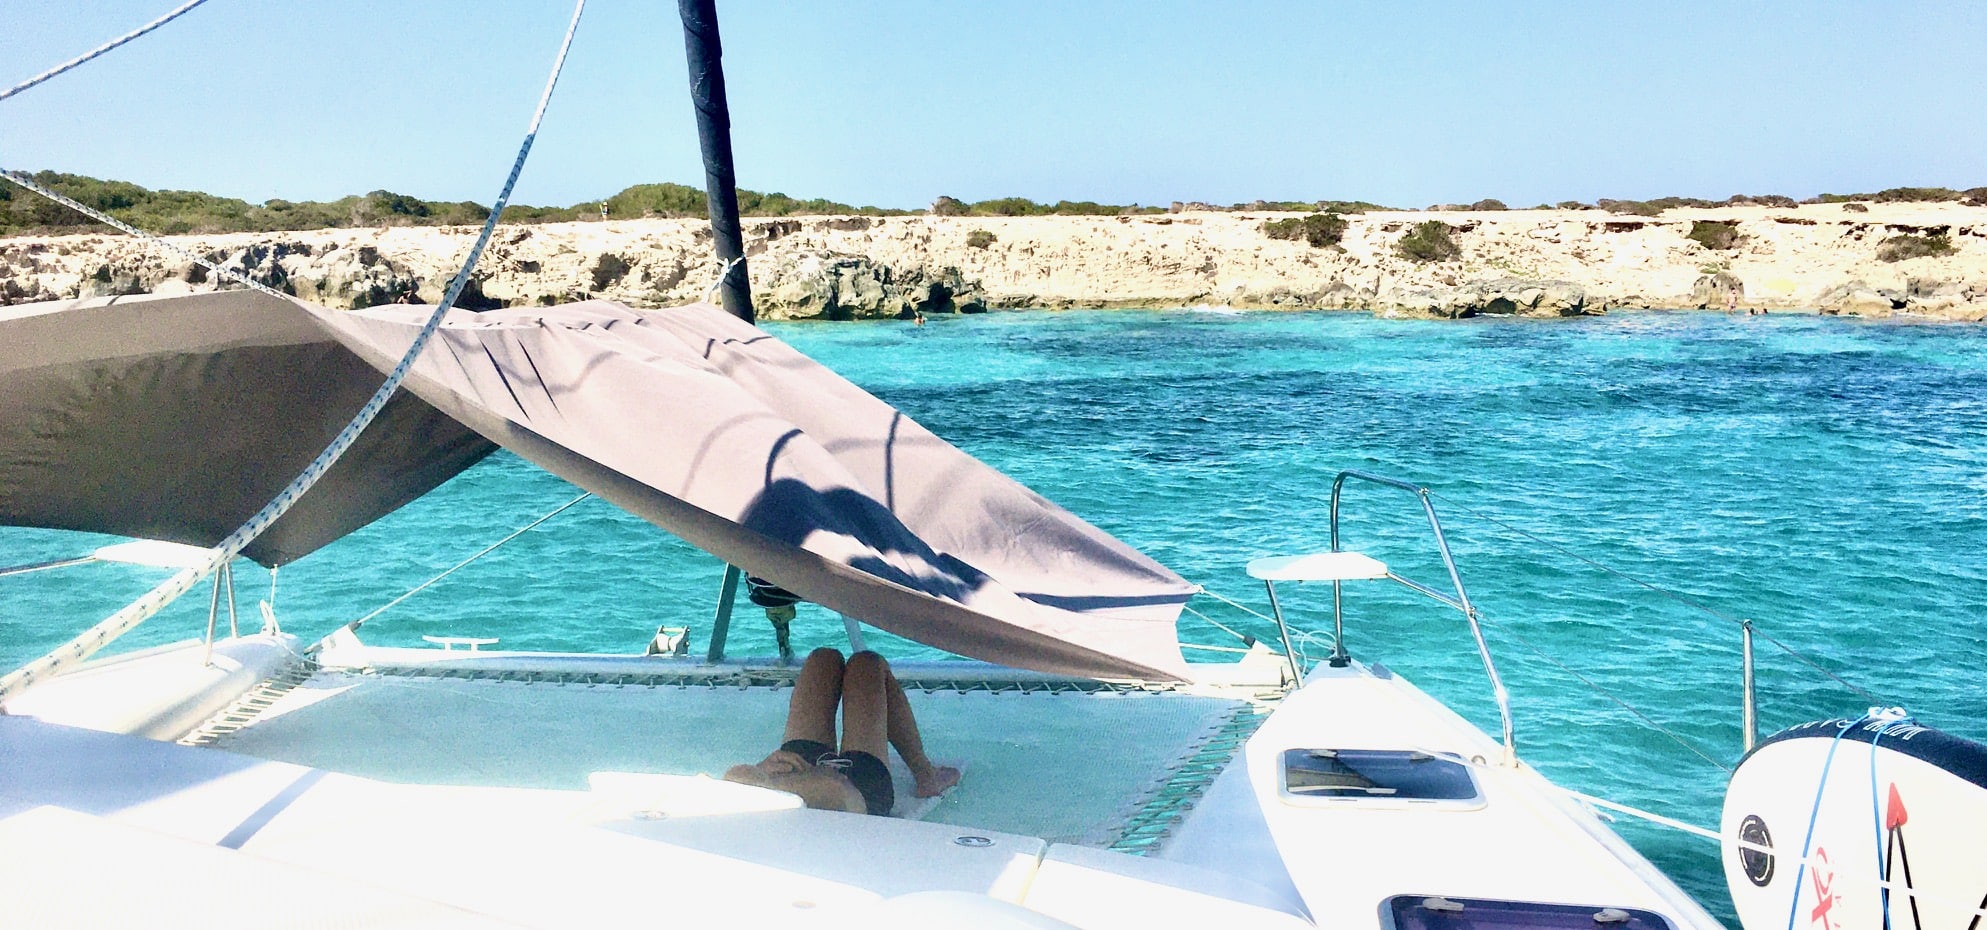 Louez un catamaran à Ibiza pour une journée, client allongé sur le filet devant le parc naturel de Salinas.